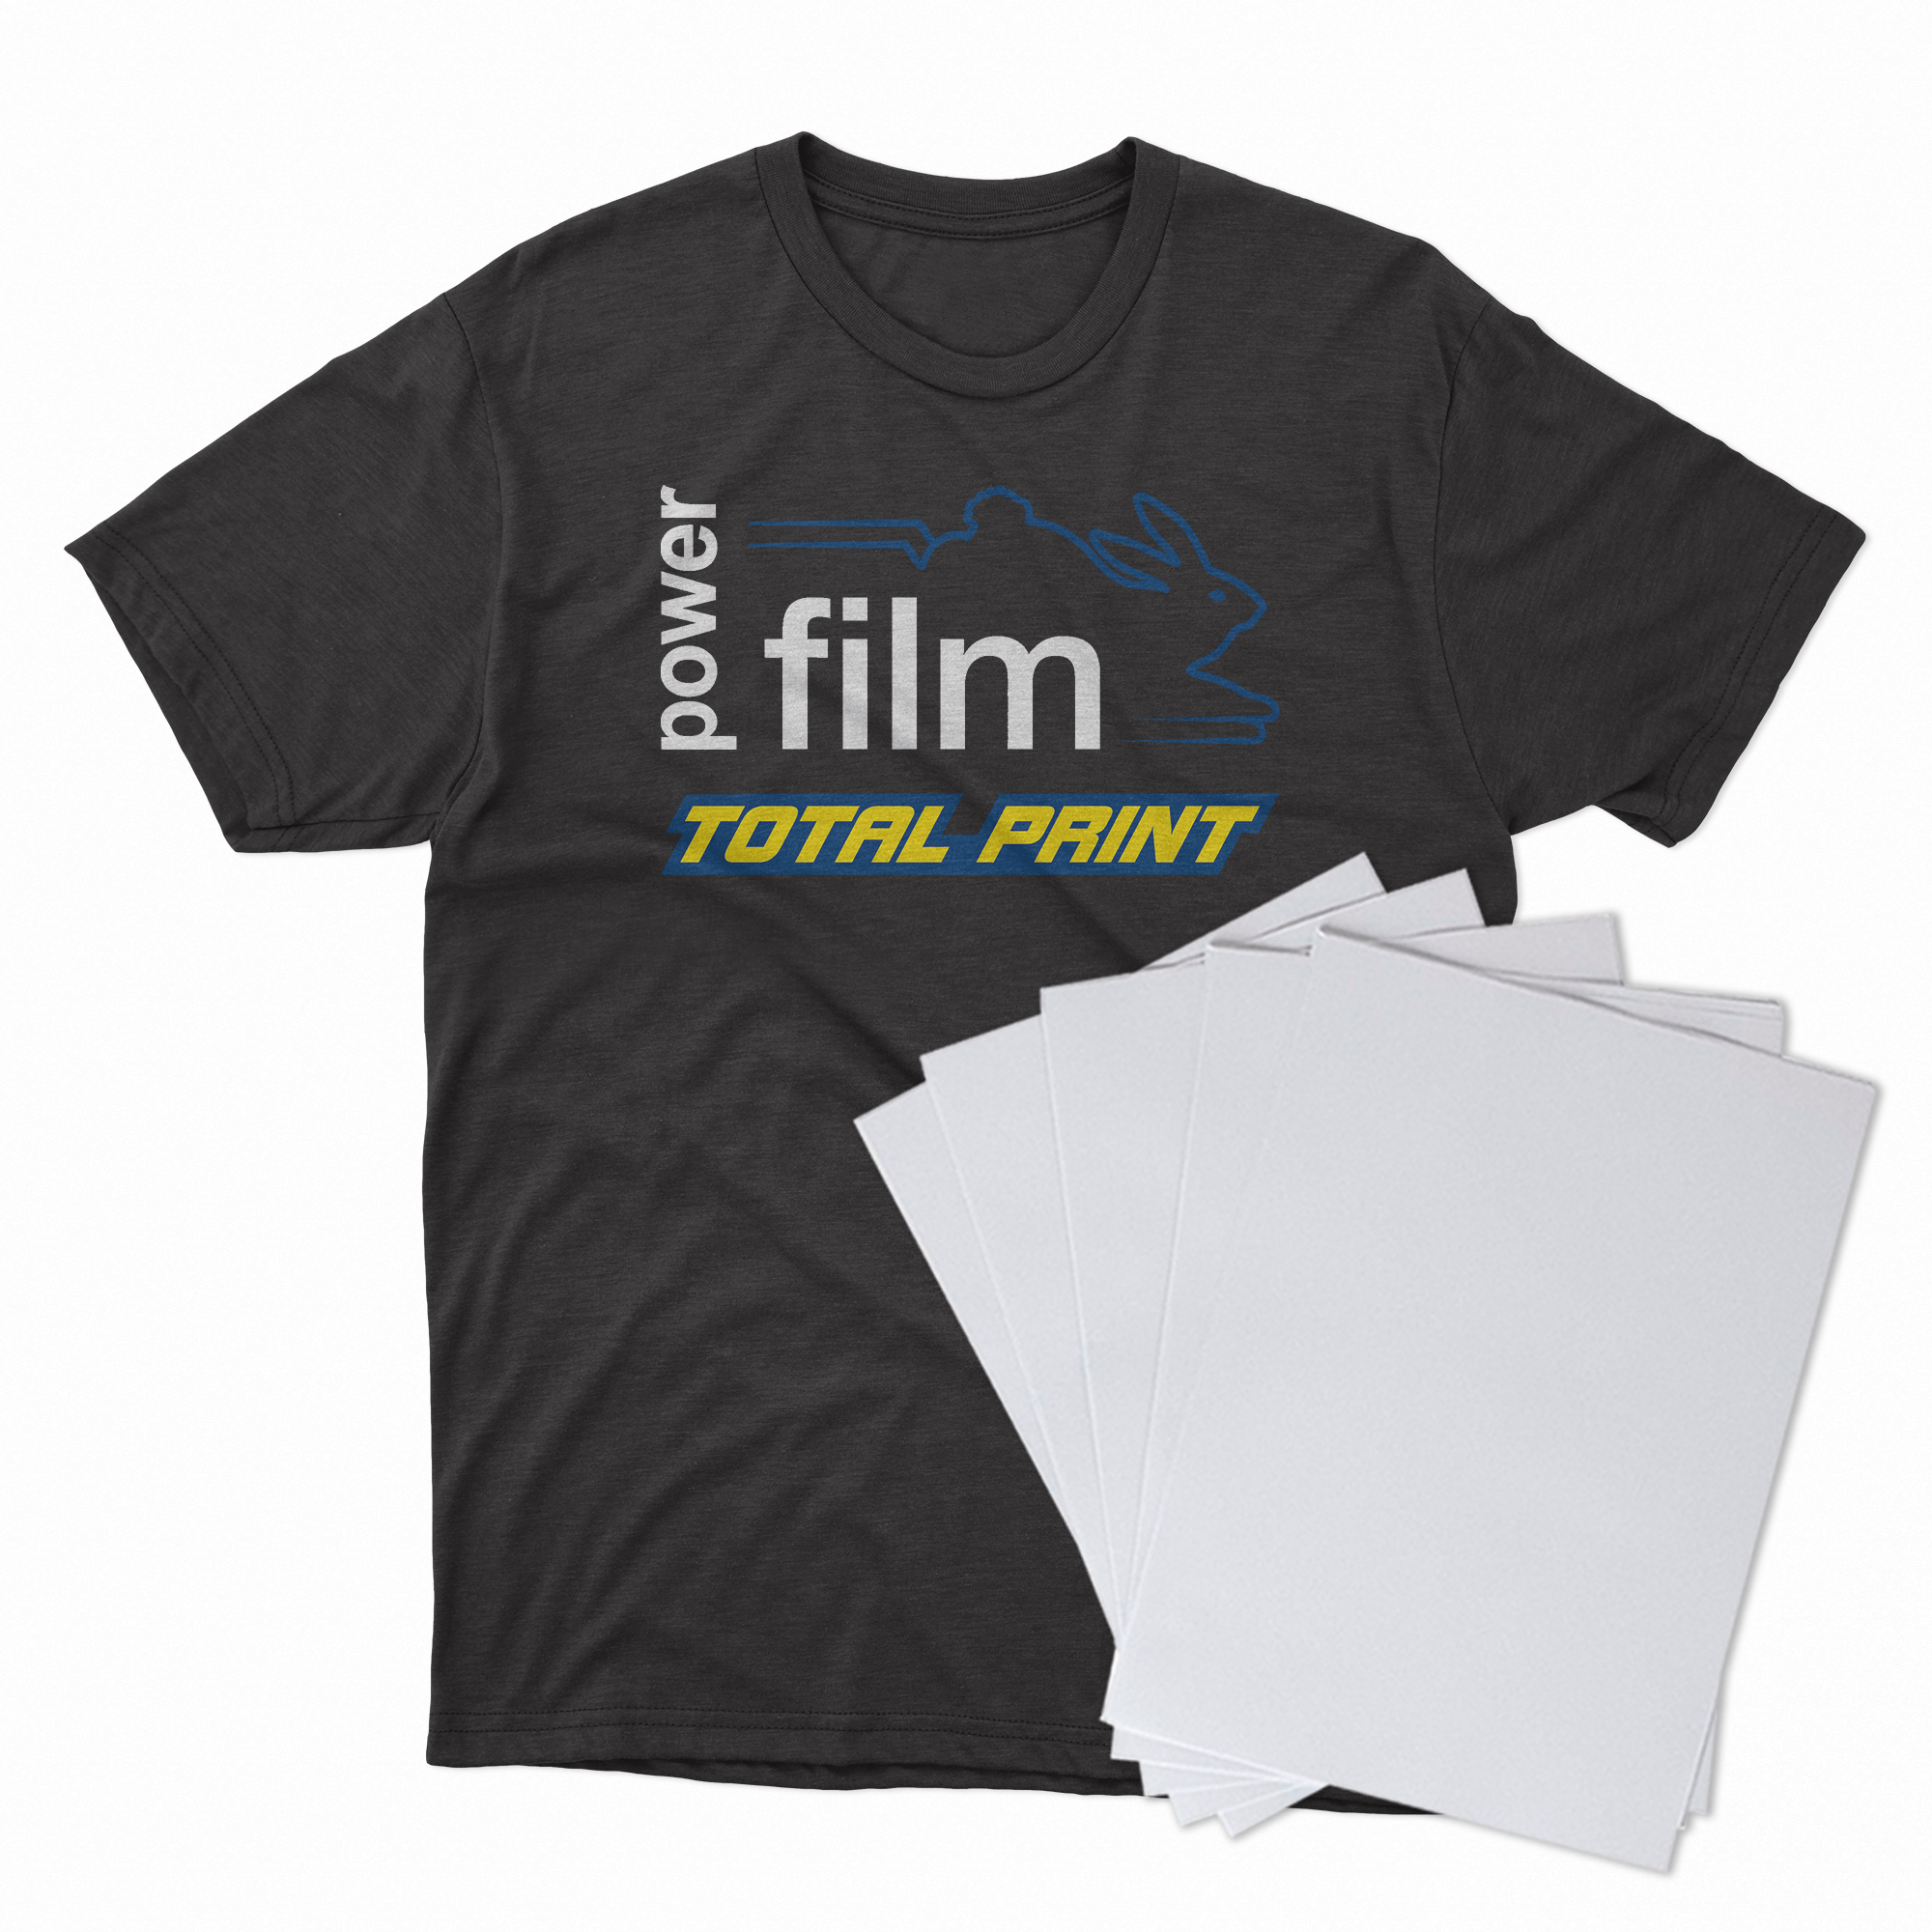 Filme de Impressão e Recorte Para Termo transferência A4 20 FOLHAS - Power Film Total Print